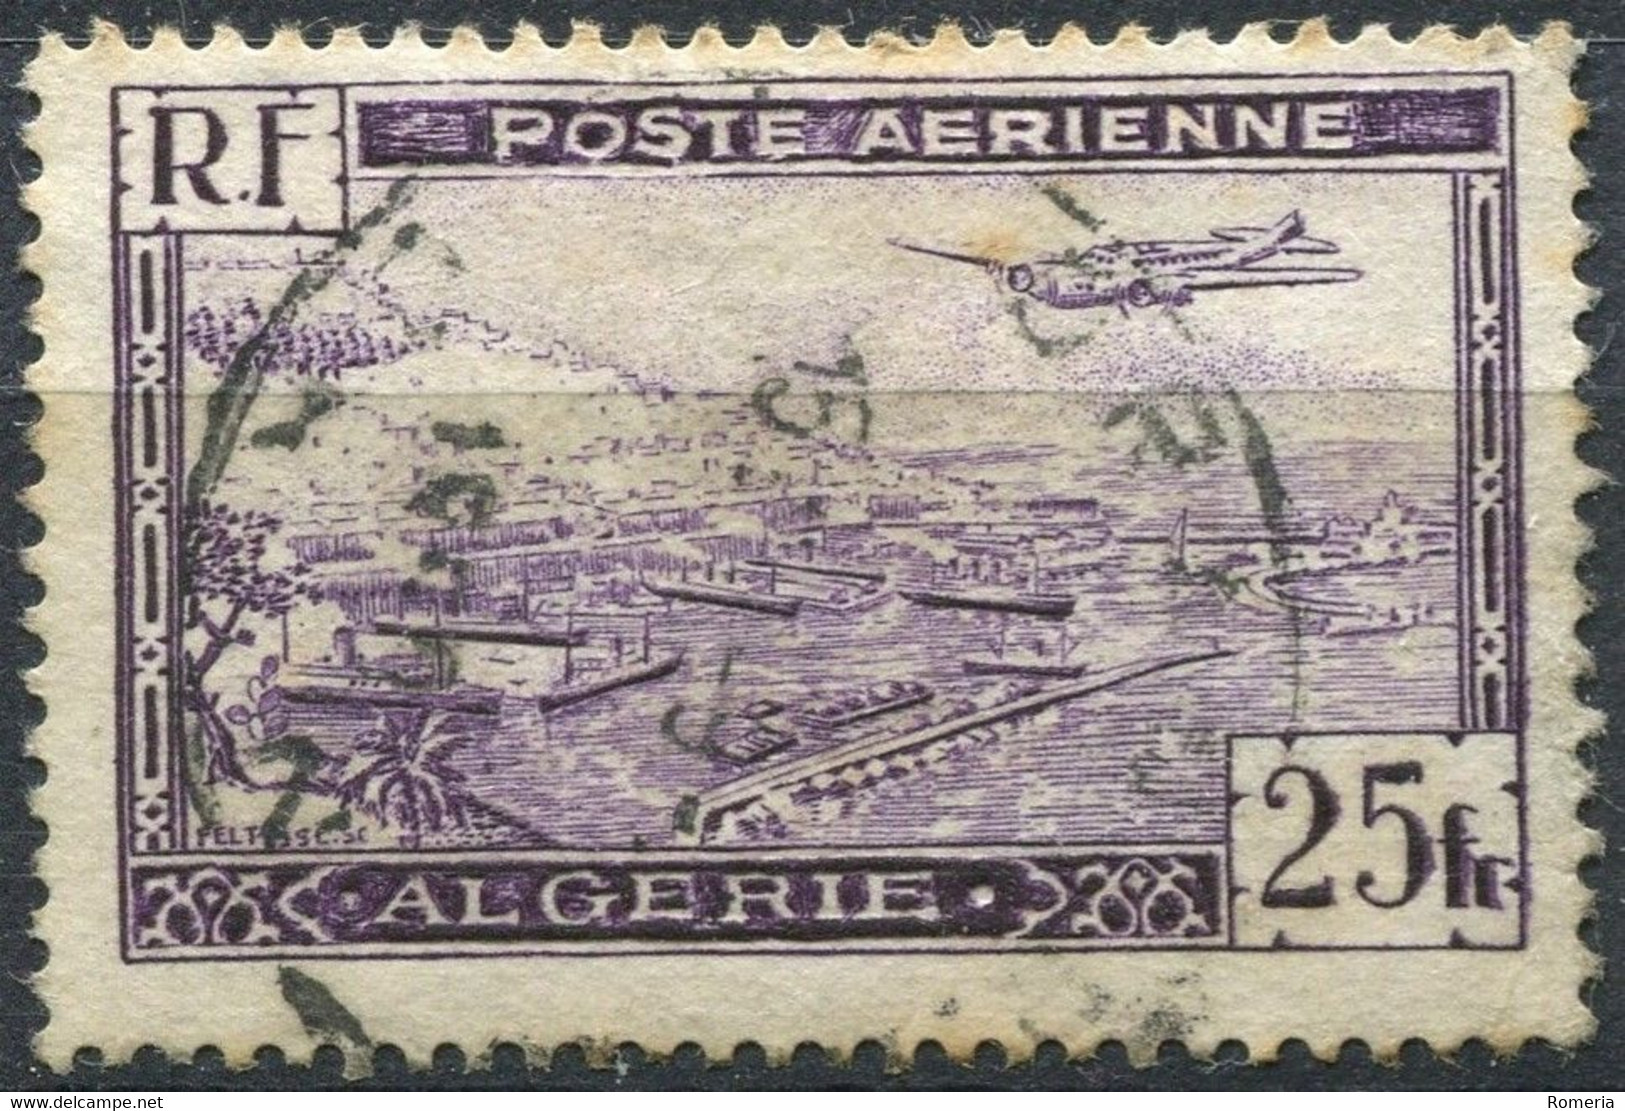 Algérie - 1924 -> 1957 - Lot TImbres Poste Aérienne, Taxes et Préiblitérés - Oblitérés ou * TC Nºs dans description